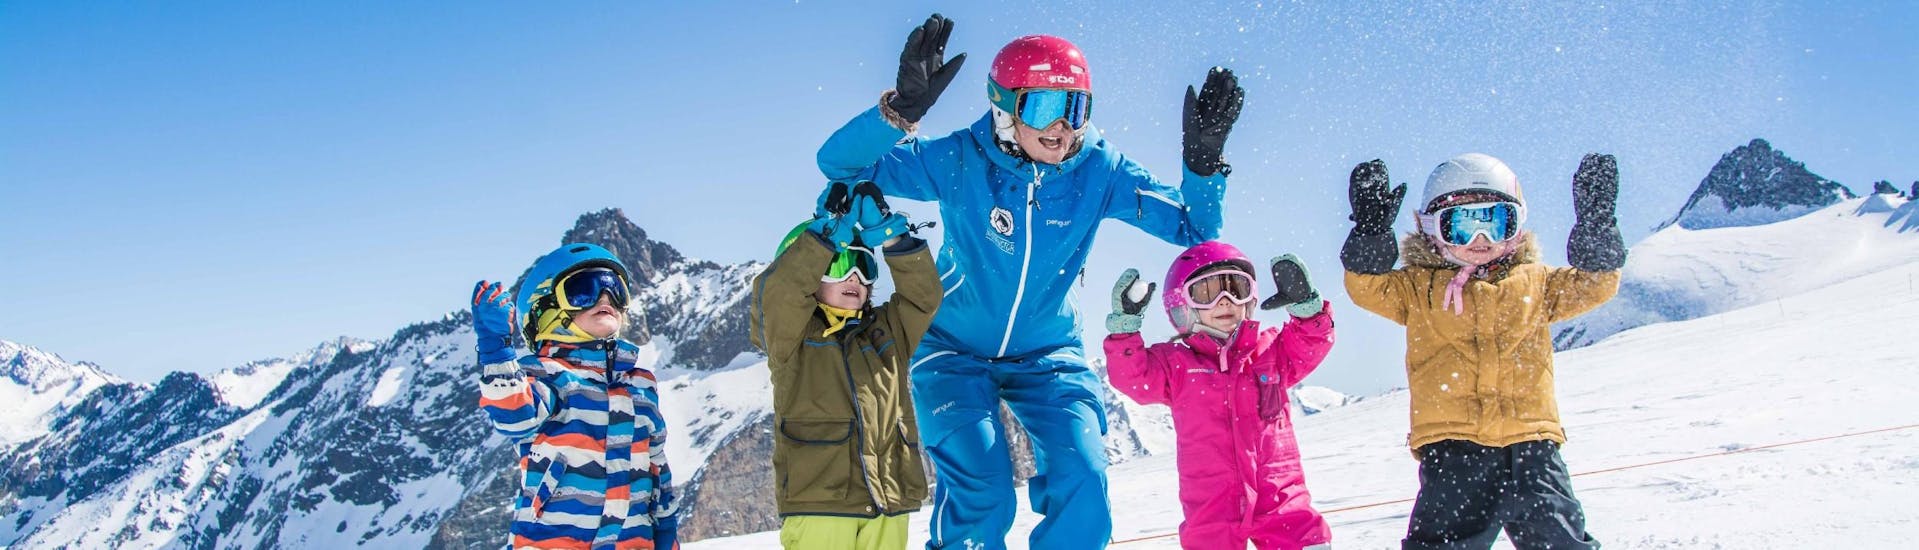 Schnupper-Skikurs für Kinder (ab 4 J.) für totale Anfänger mit Skischule ESKIMOS Saas-Fee - Hero image